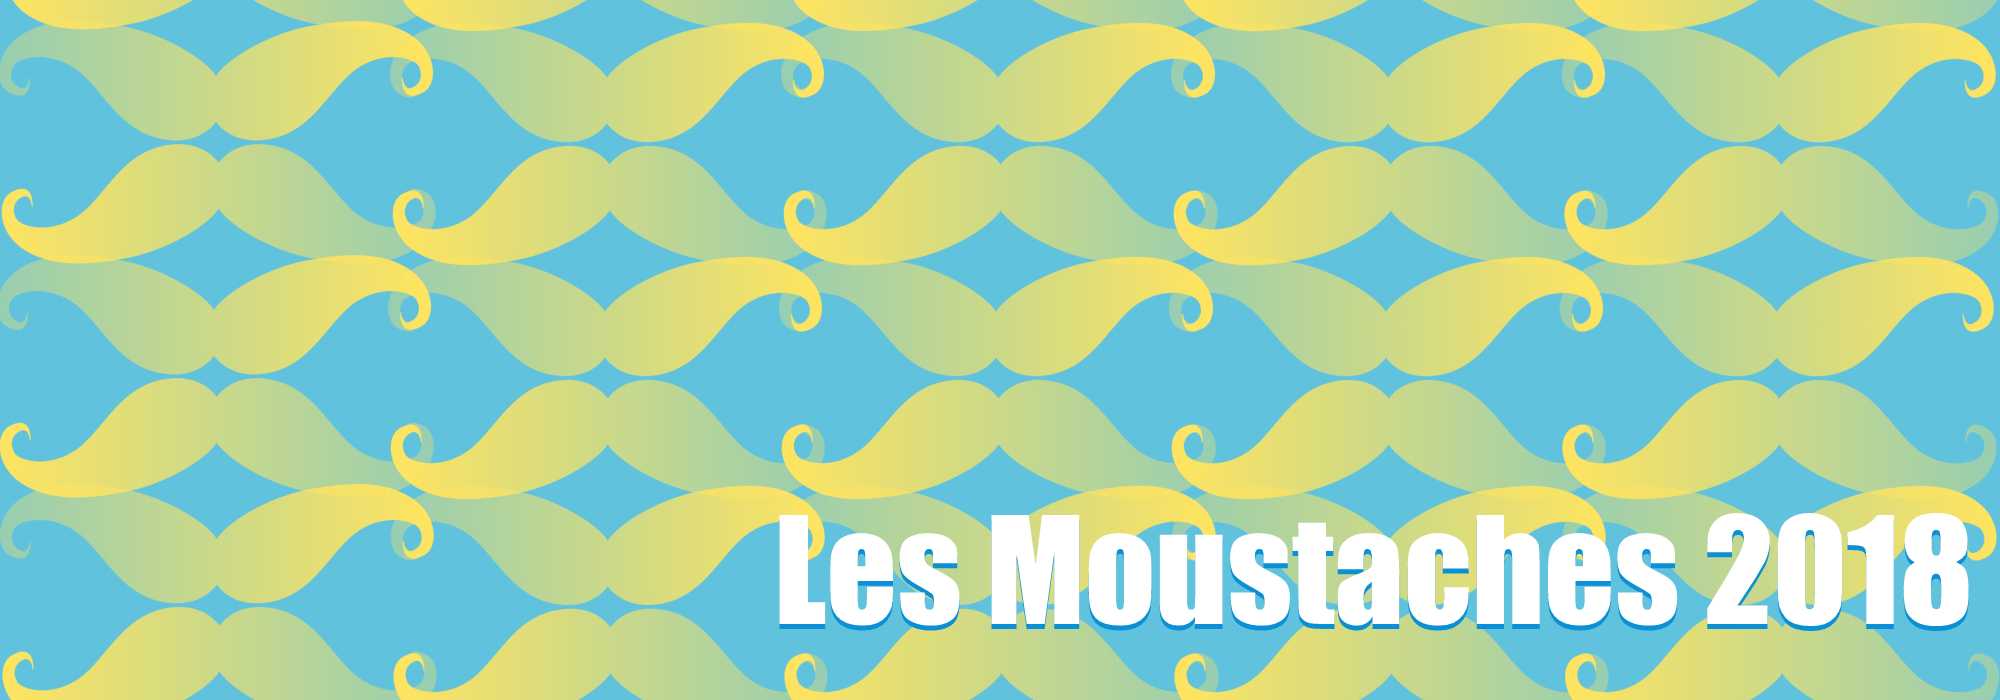 Les Moustaches 2018 – Le lièvre et la tortue